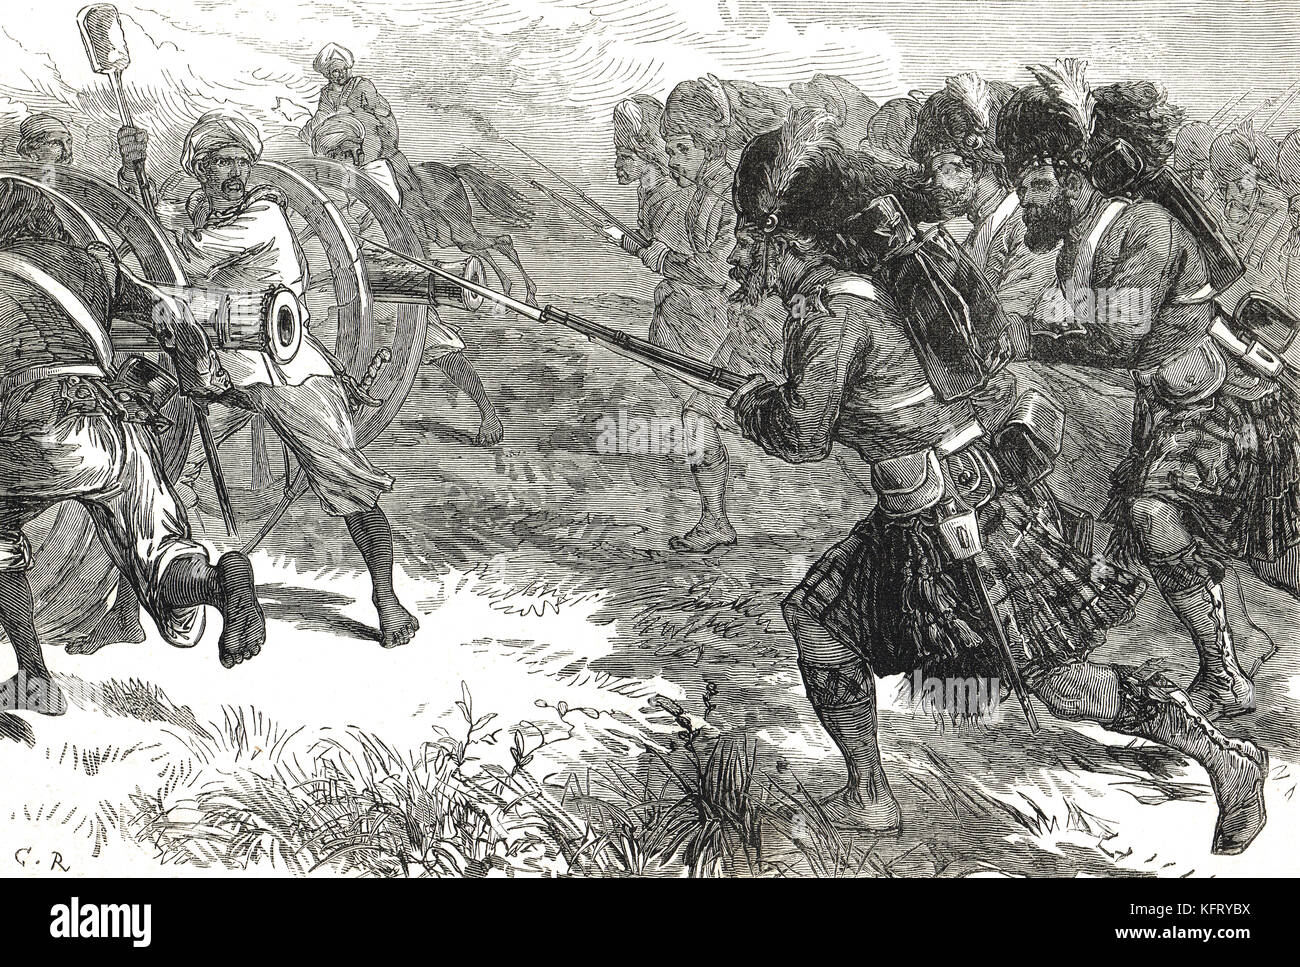 Cargo de los montañeses, la india, la rebelión de 1857 Foto de stock